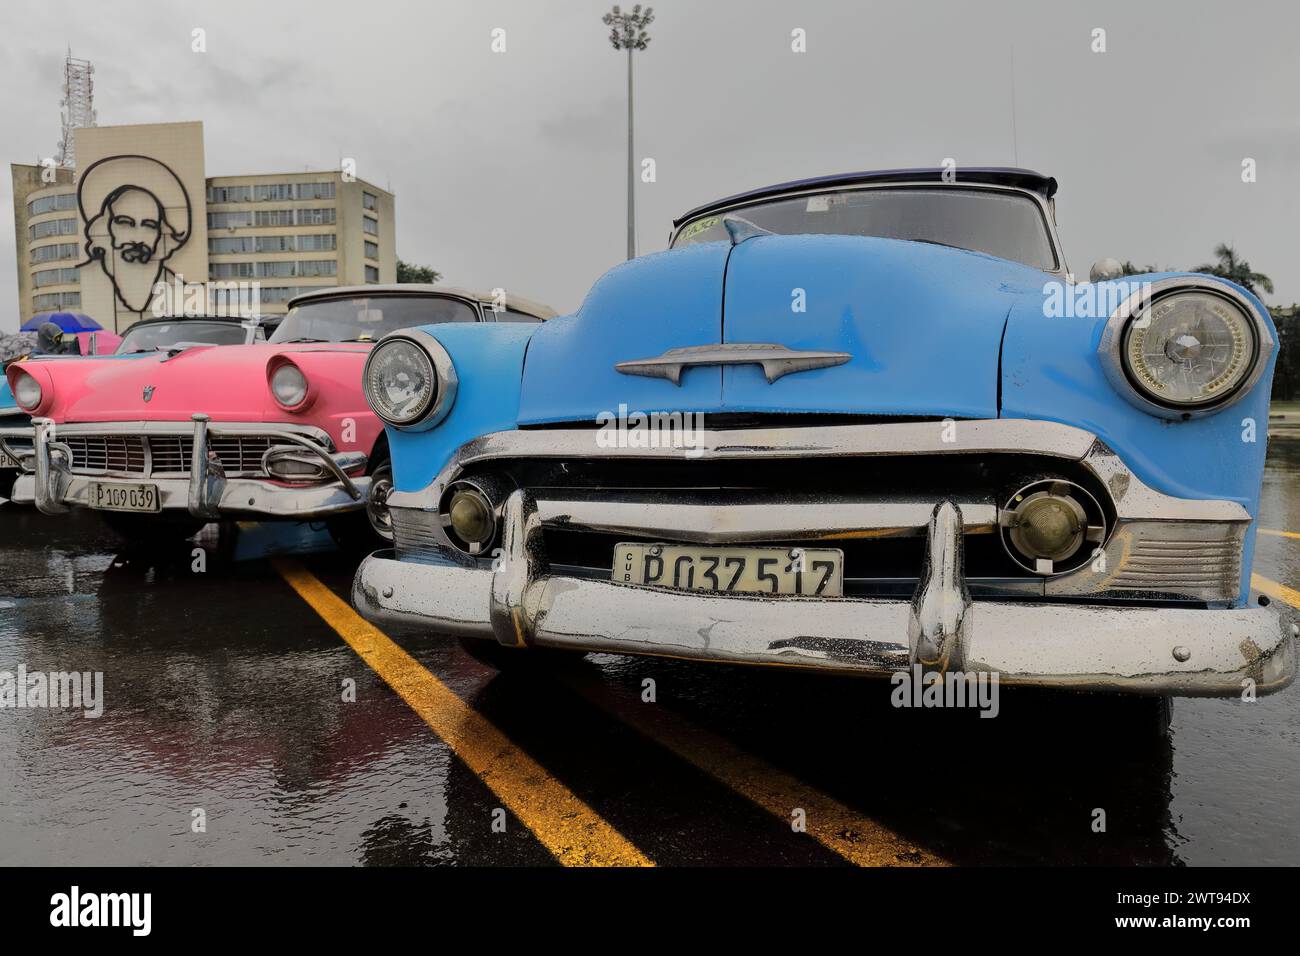 078 Klassische blau-rosa-blaue amerikanische Autos - Almendron, Yank Tank Chevrolet-Ford-Chevrolet - von 1950-56-53, geparkt auf der Plaza de la Revolucion. Havanna-Kuba Stockfoto